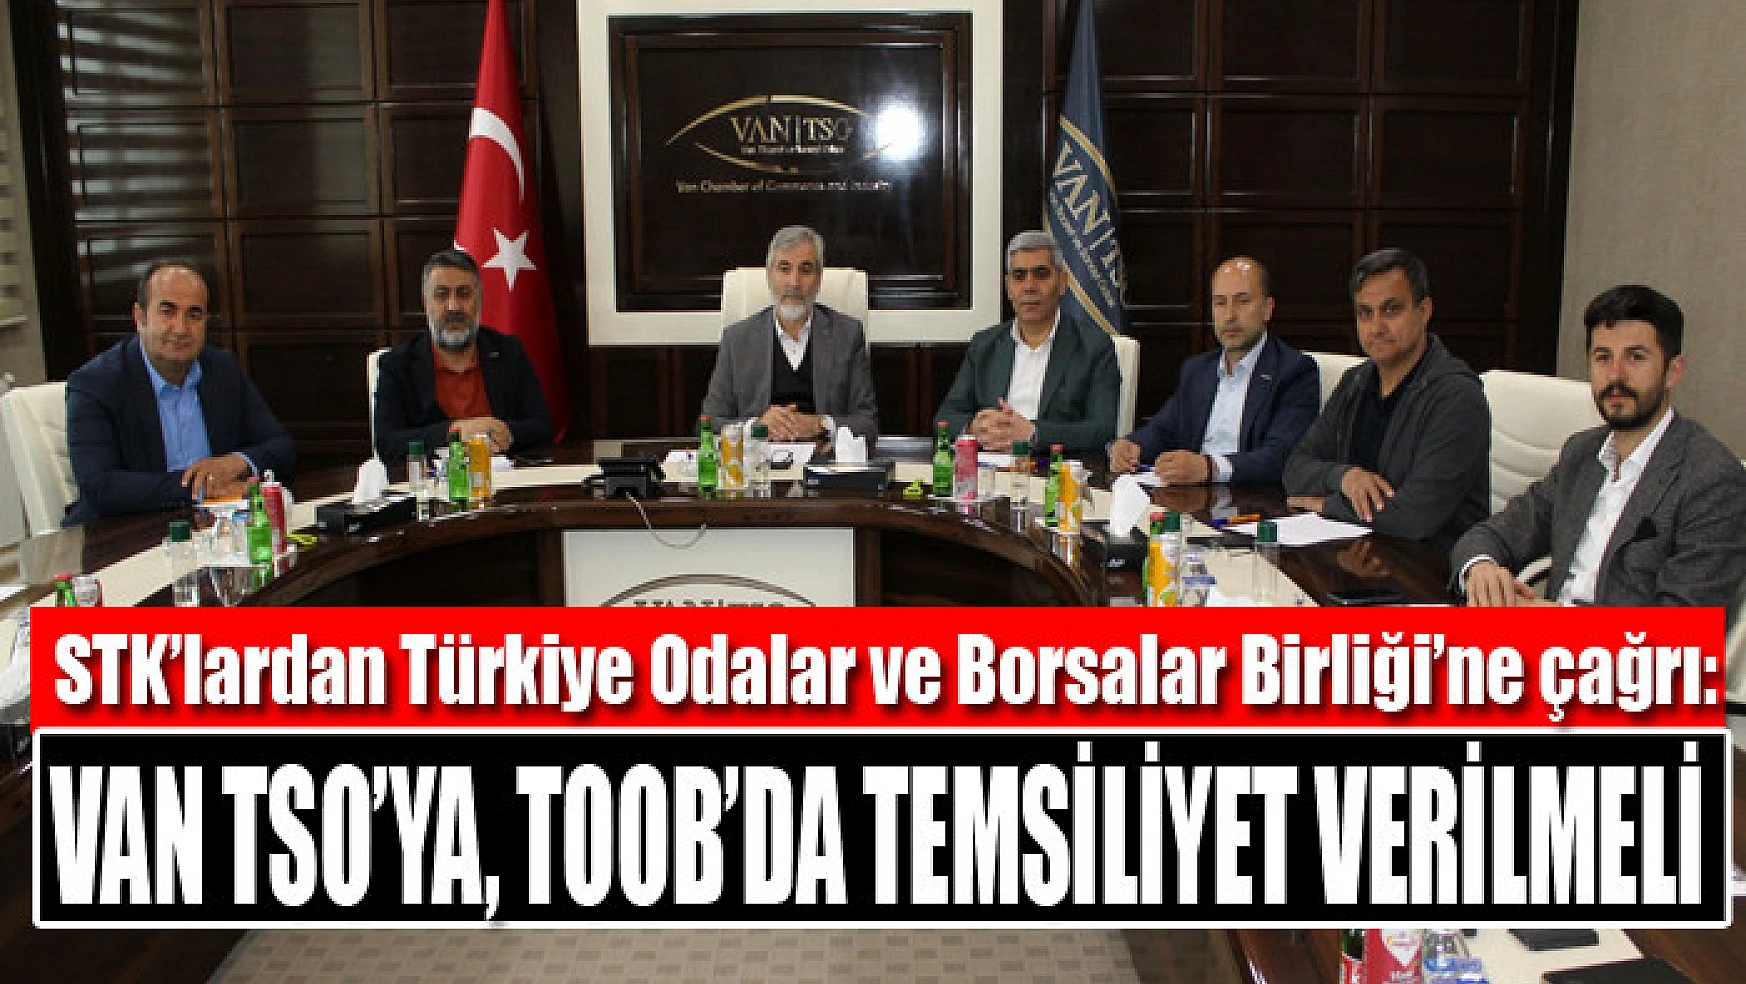 STK'lardan Türkiye Odalar ve Borsalar Birliği'ne çağrı: Van TSO'ya, TOOB'da temsiliyet verilmeli